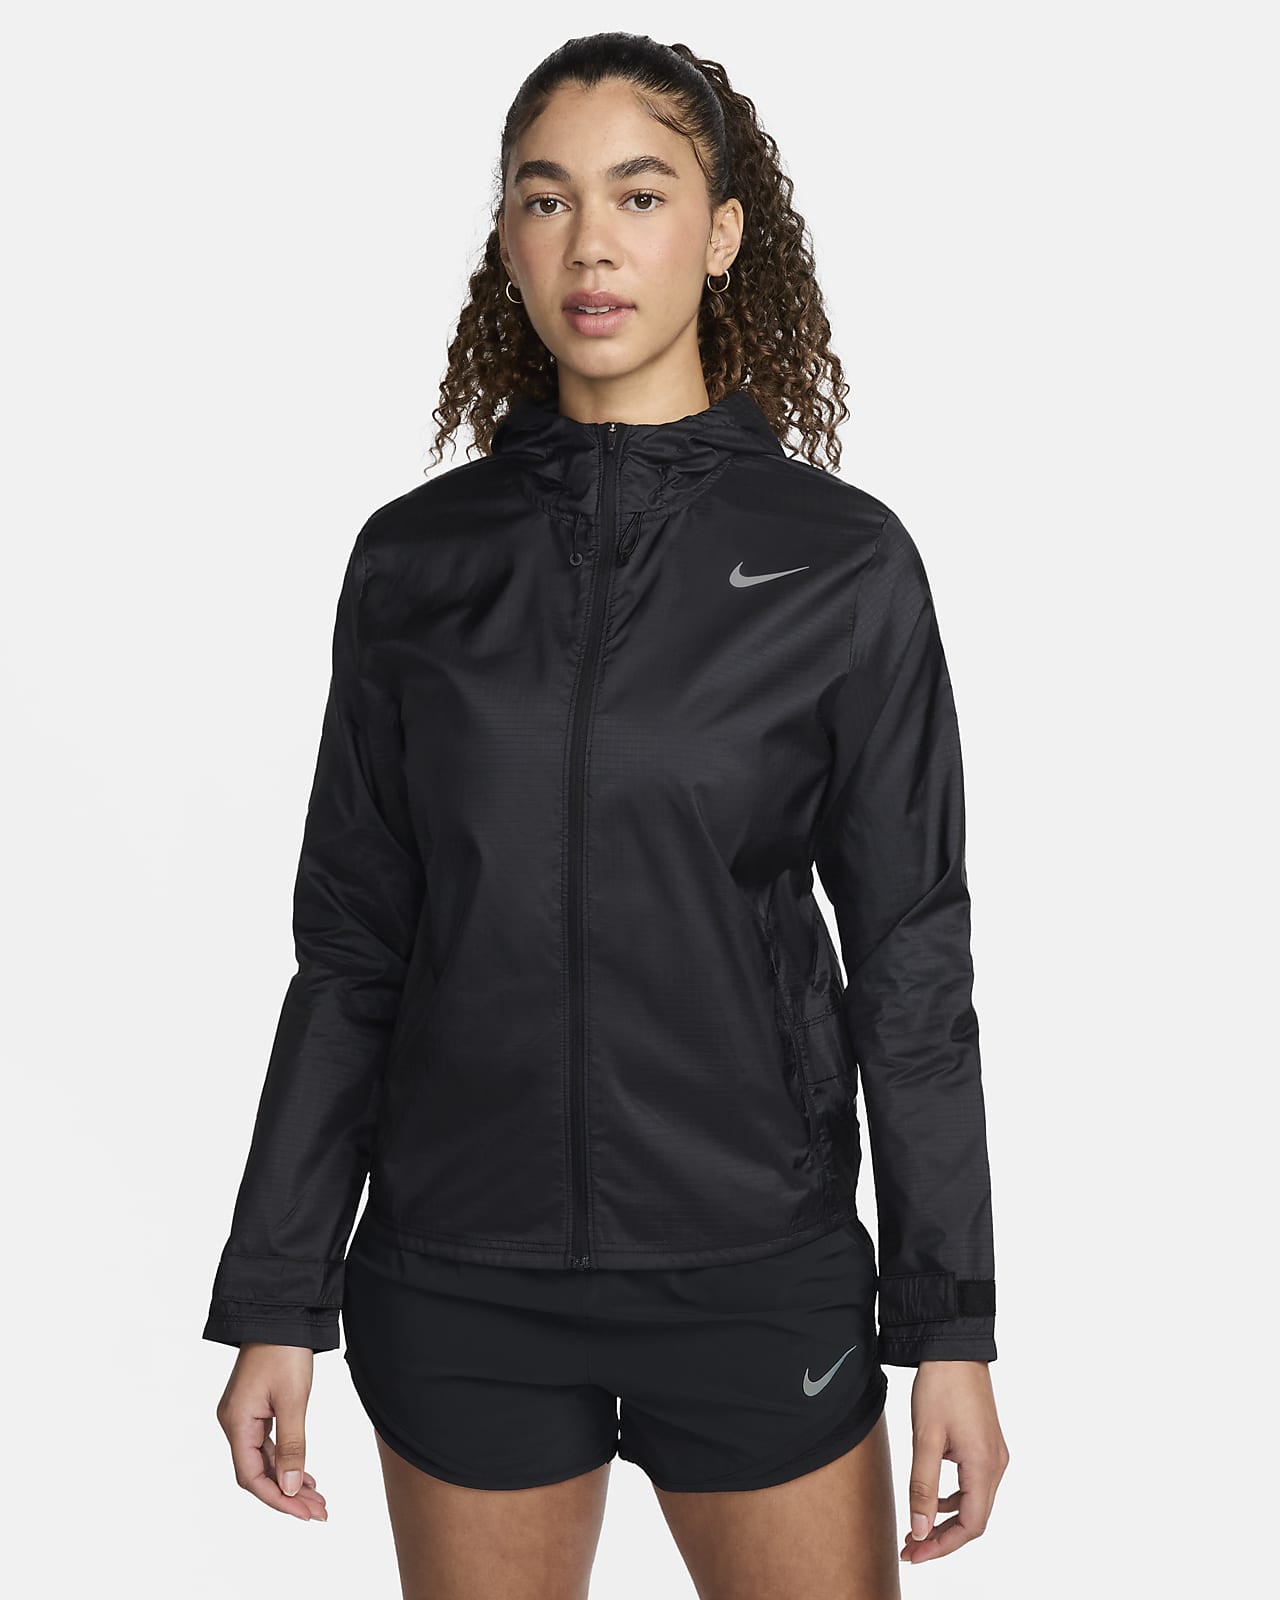 Löparjacka Nike Essential för kvinnor